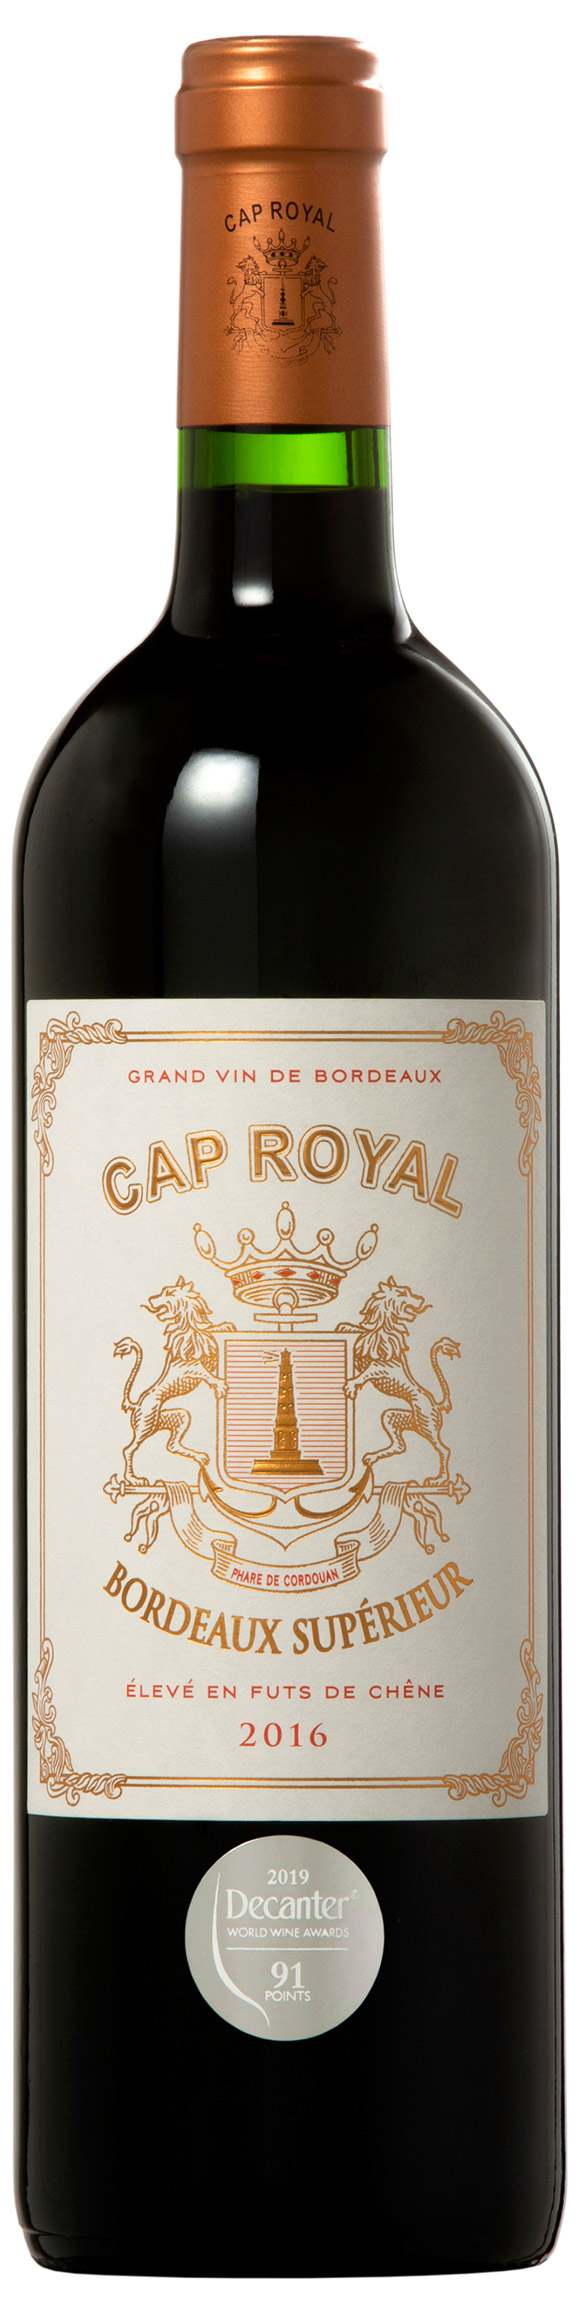 Cap Royal - Cap Royal Bordeaux Supérieur 2016